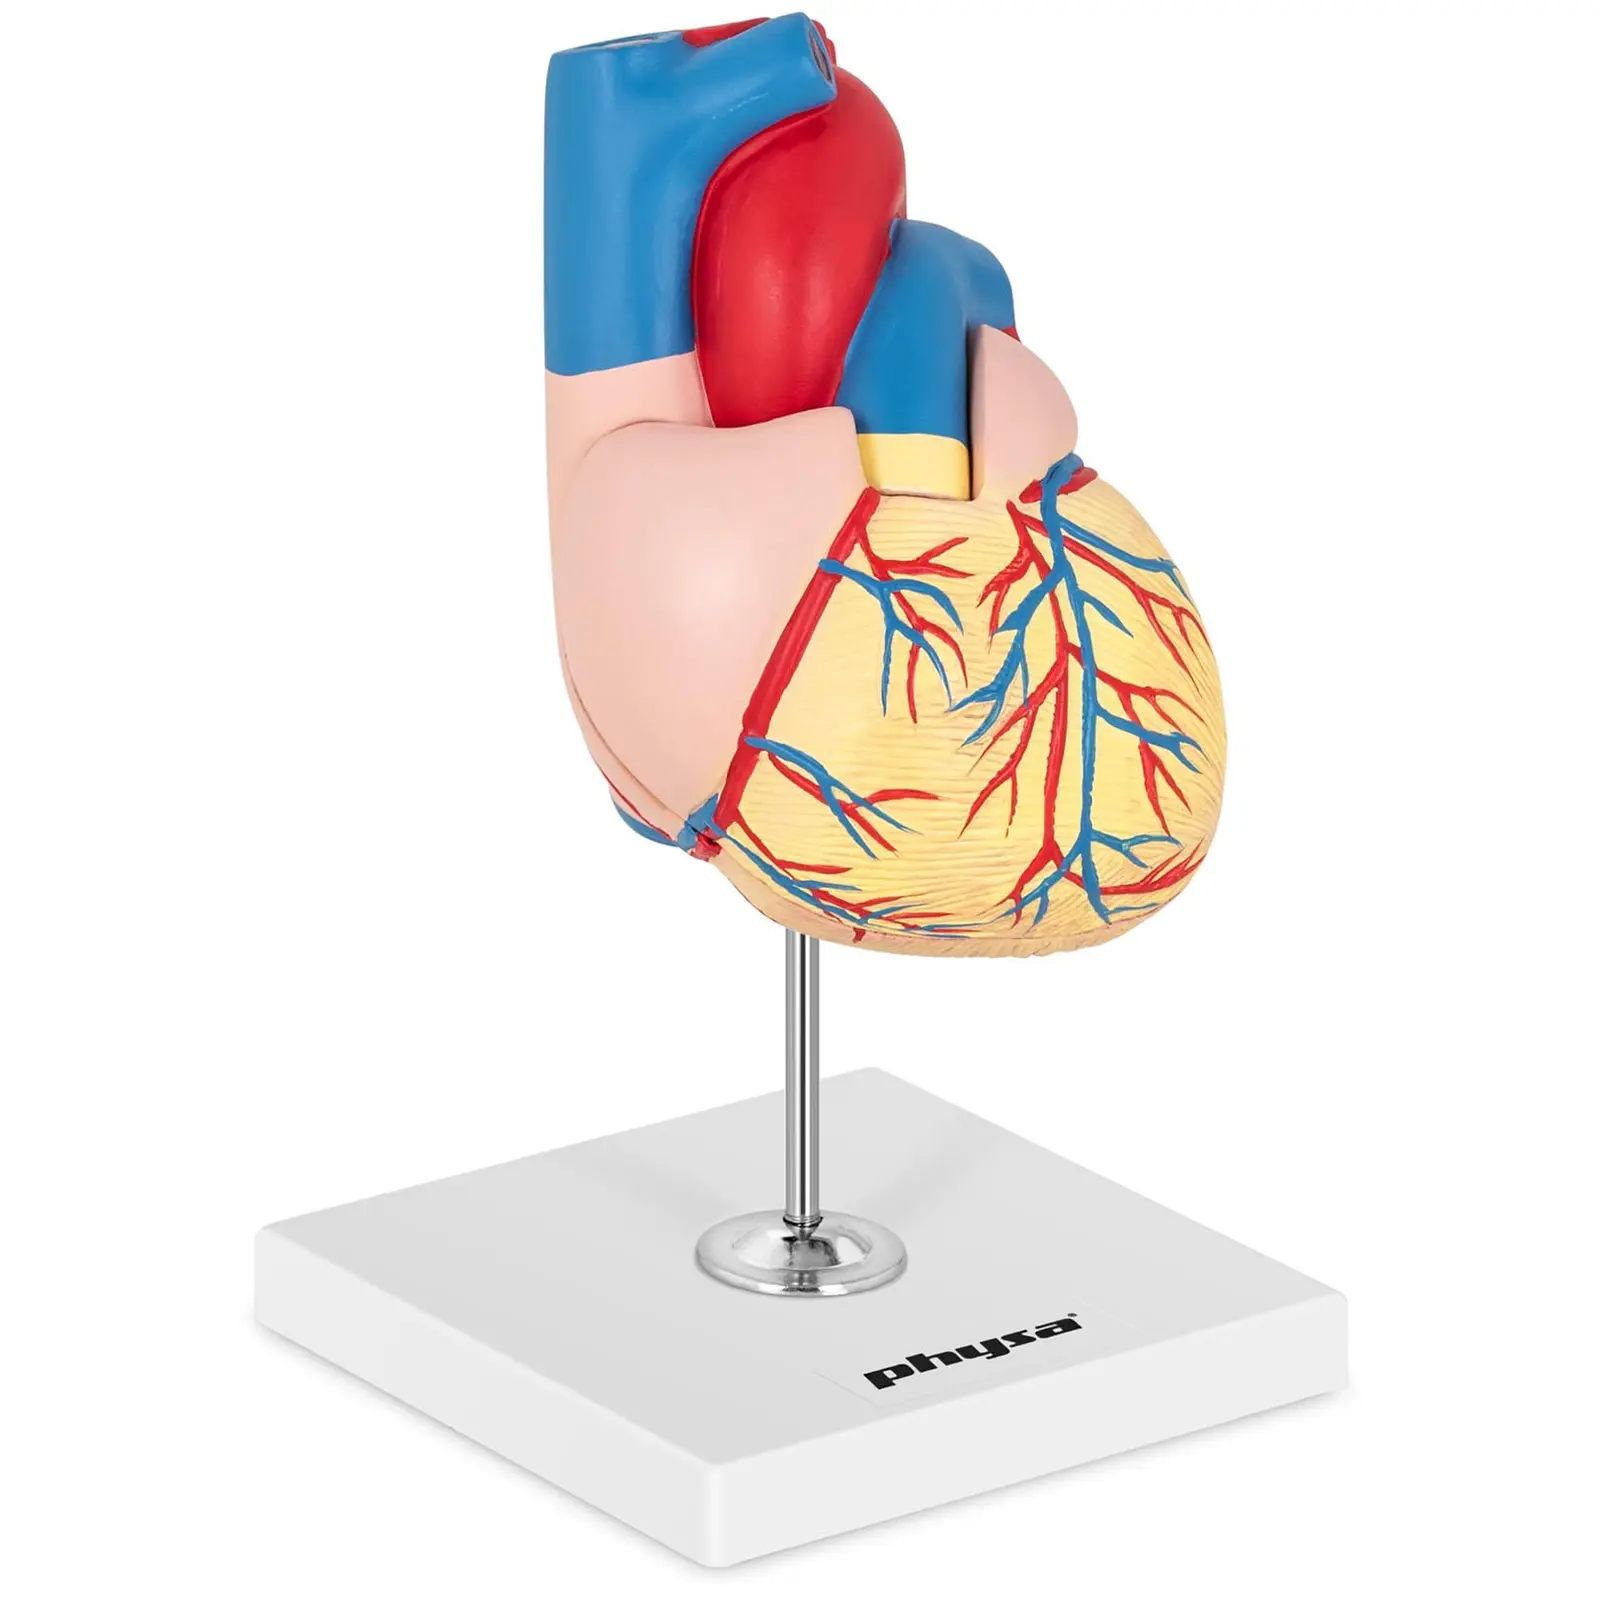 Модел Сърце - разделя се на 2 части - в реален размер